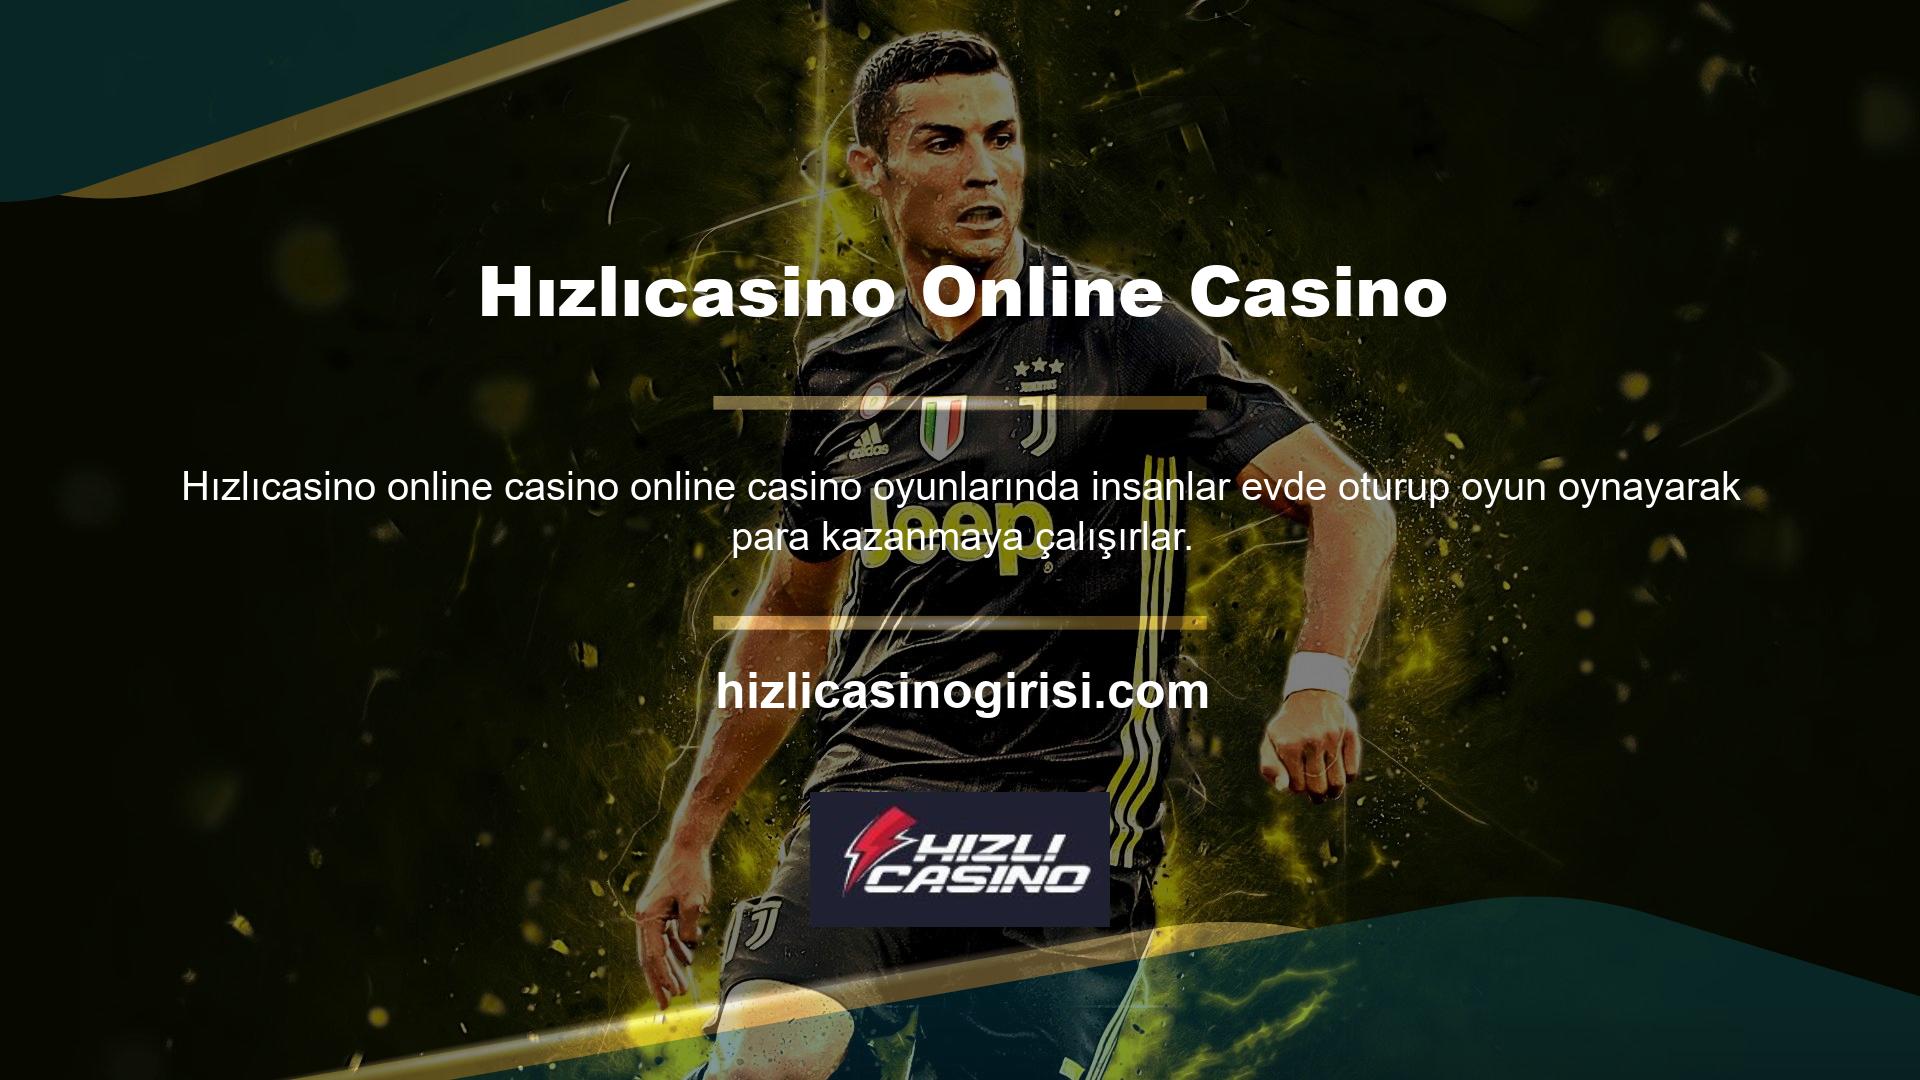 Hızlıcasino, üyelik hesabı olanlara geniş bir oyun yelpazesi sunan uluslararası bir casino sitesidir